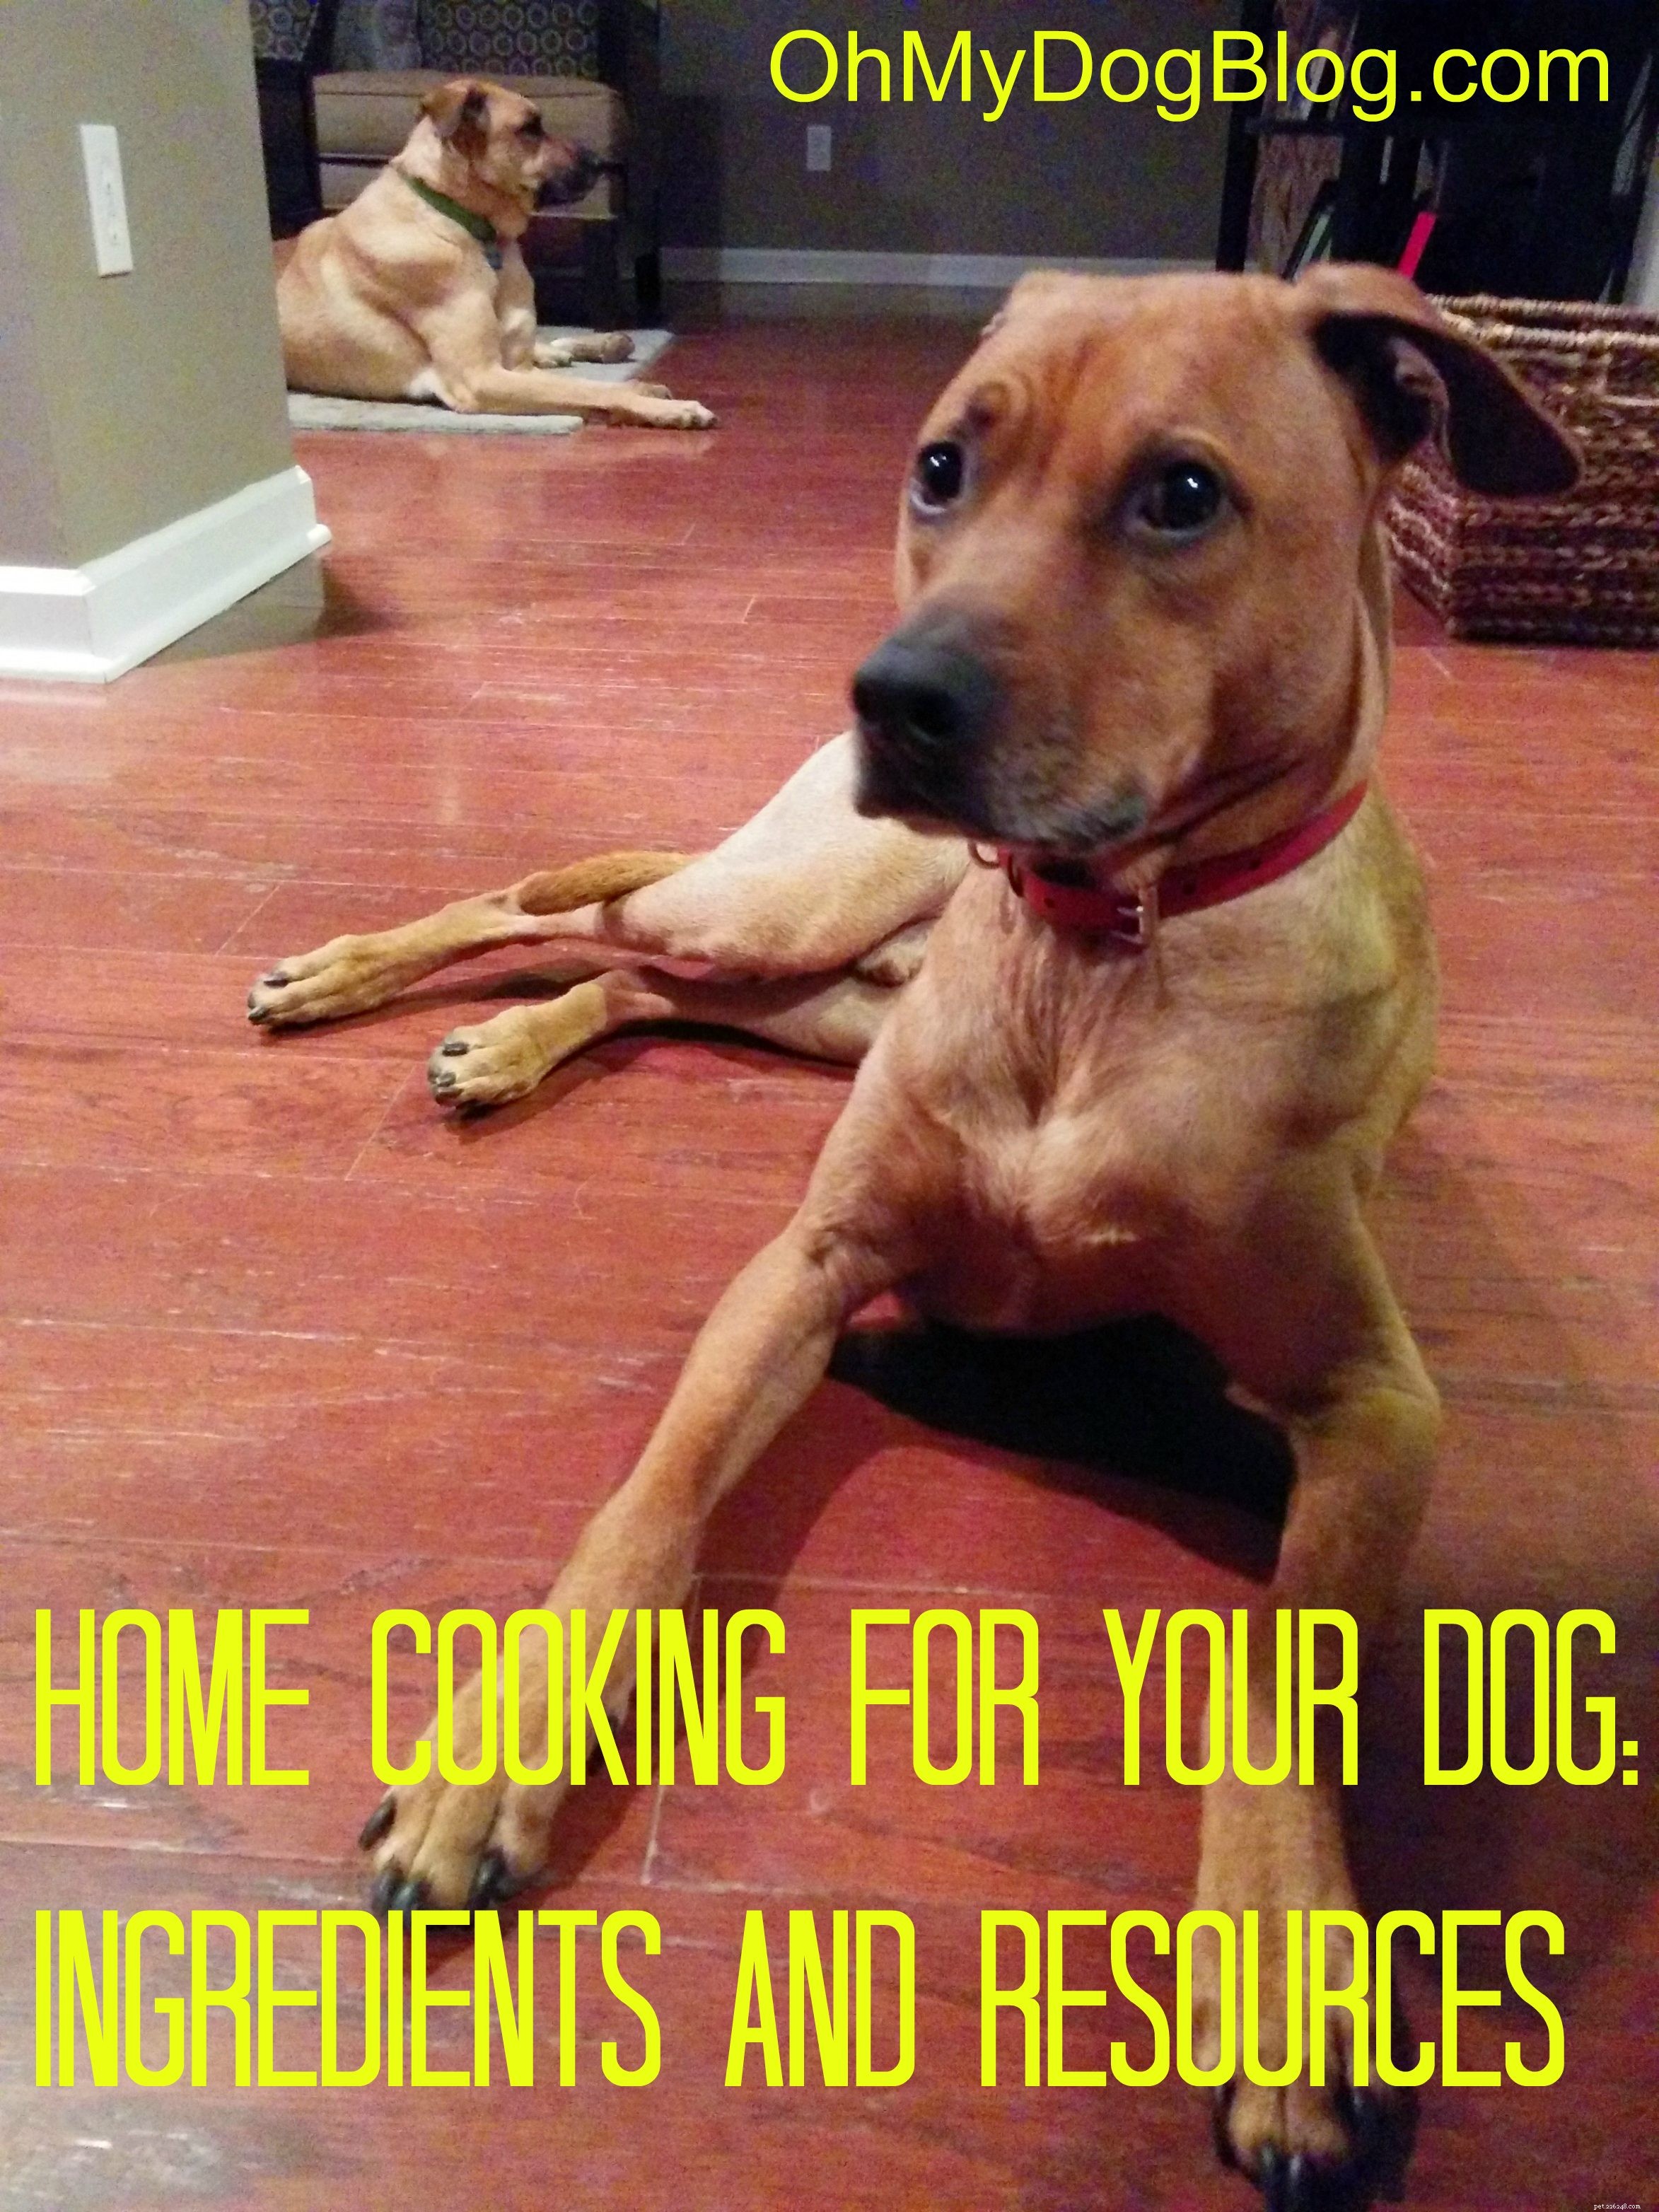 Cozinha caseira para nosso cachorro:o que tentamos + recursos